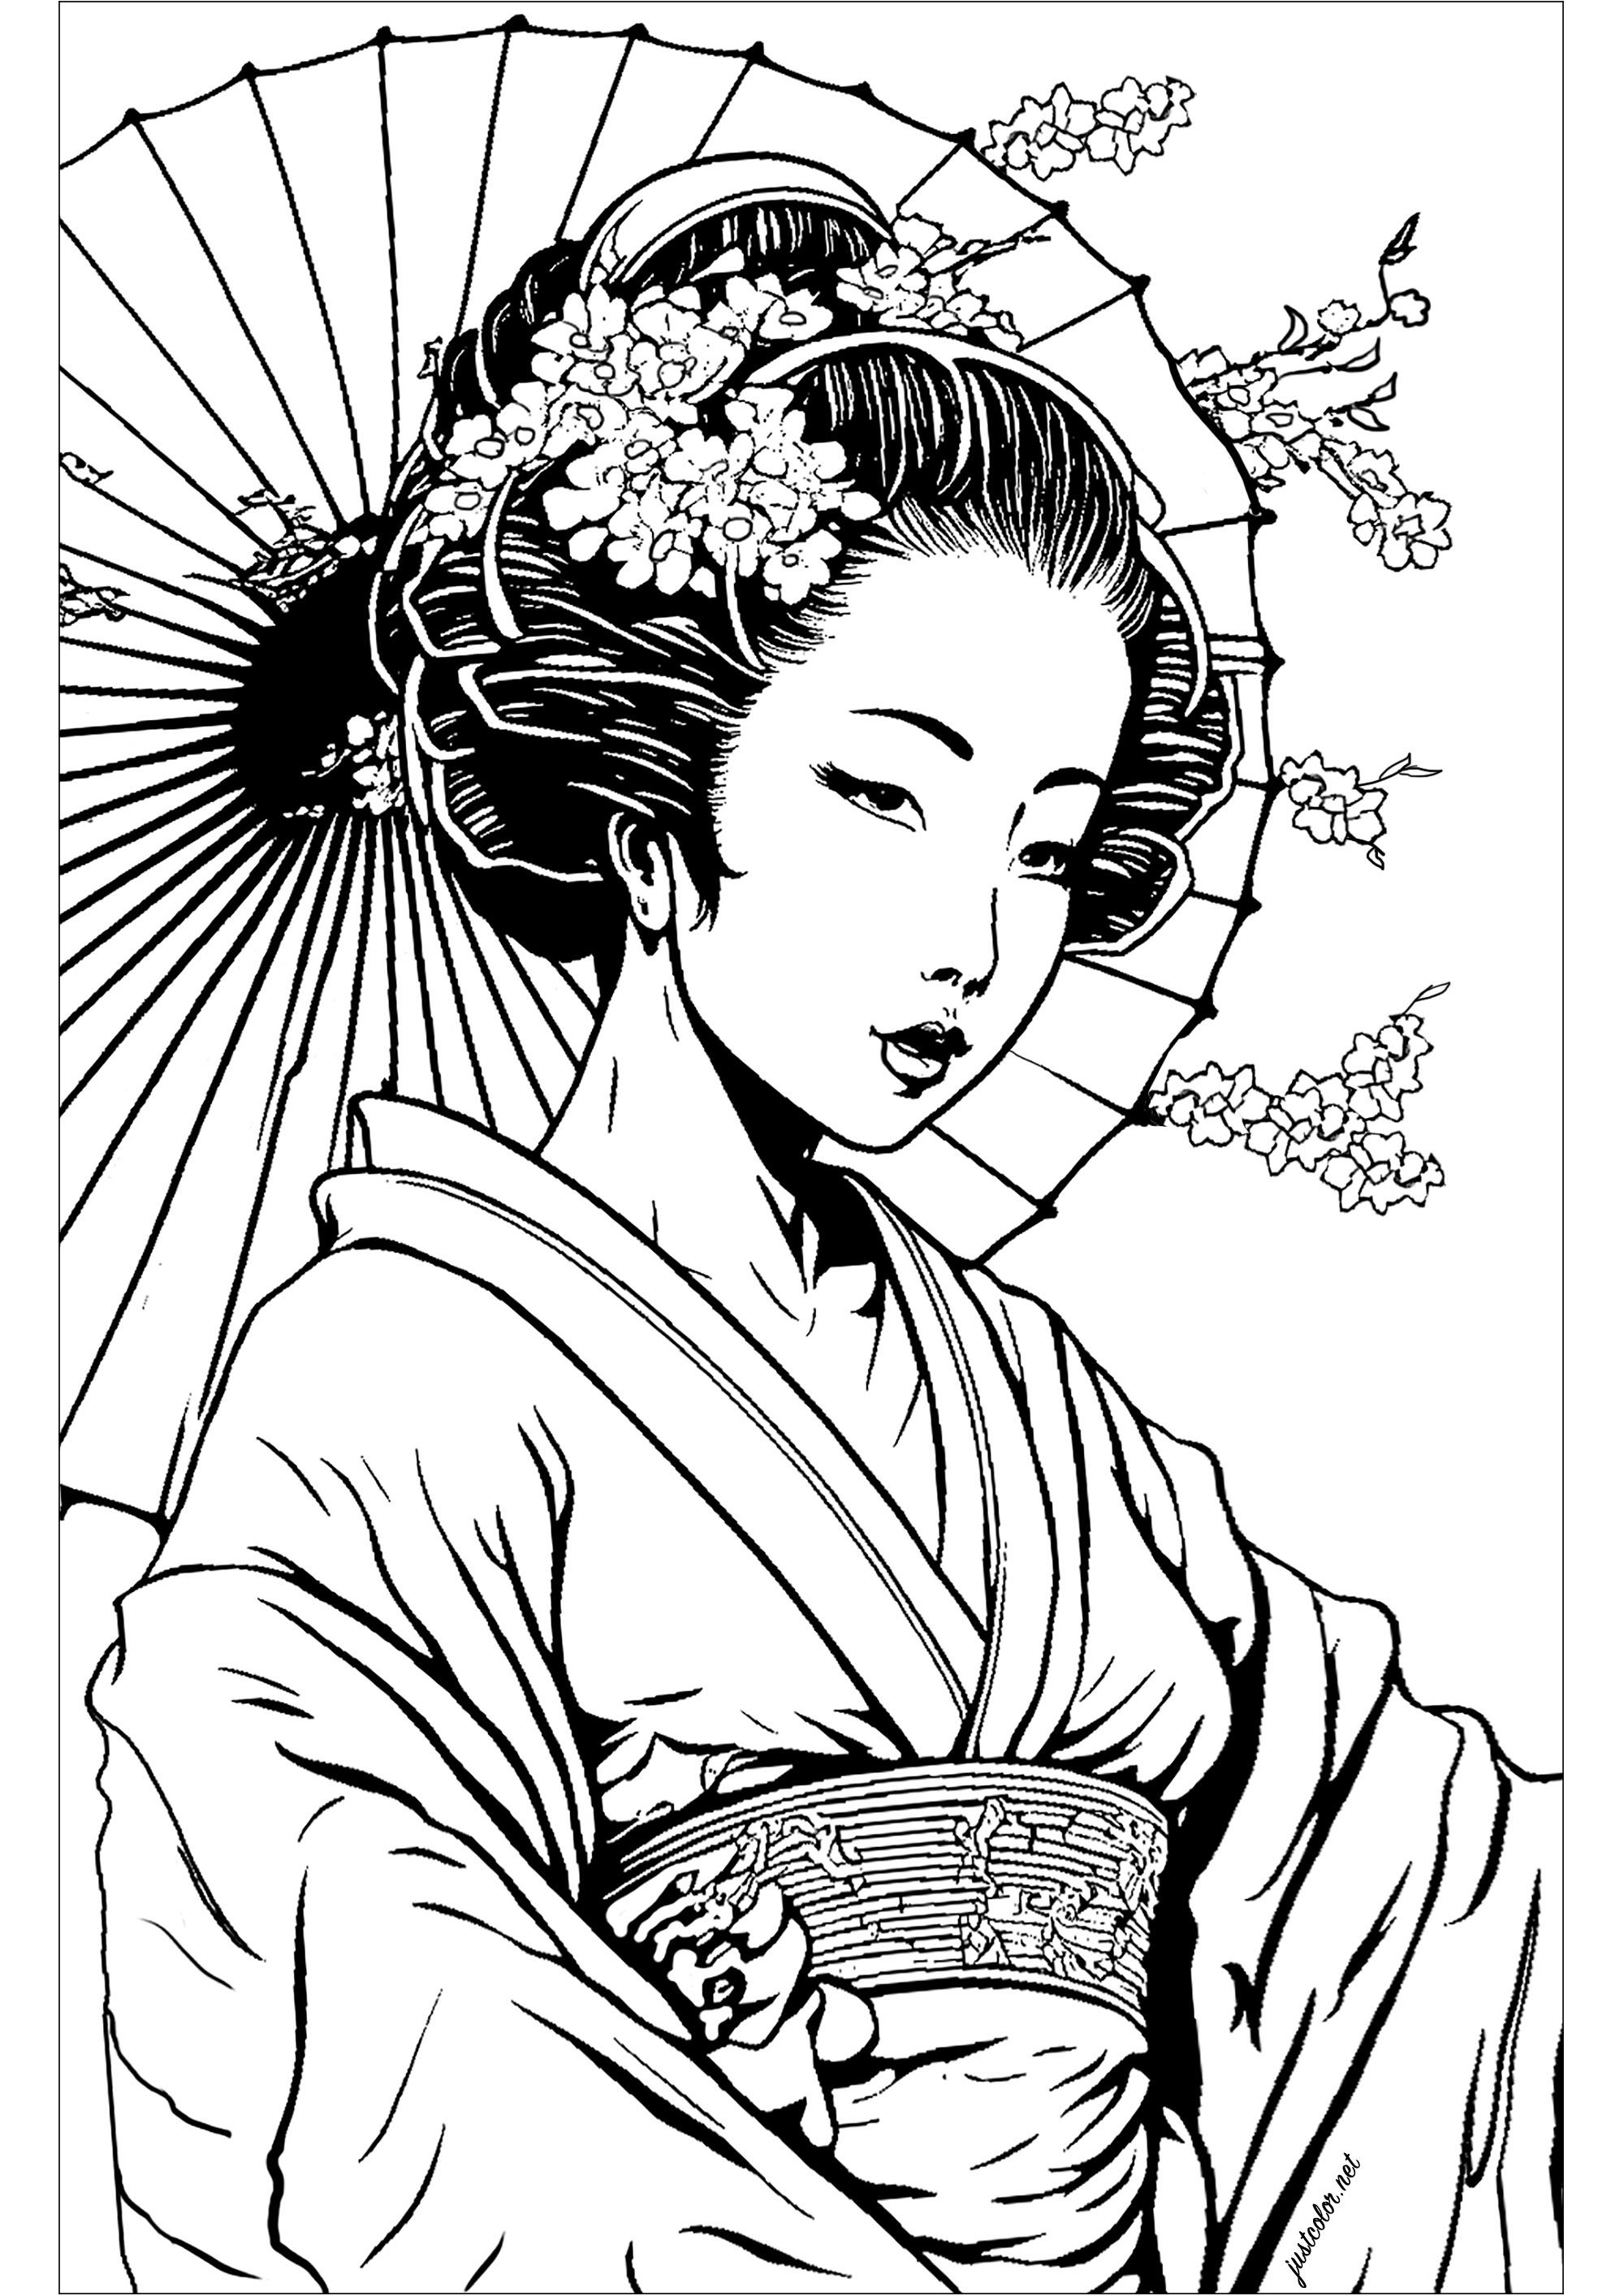 Schöne Geisha zum Ausmalen. Die Geisha ist in einer klassischen Pose dargestellt, mit einem gelassenen, wohlwollenden Ausdruck. Die Komposition ist sehr einfach, aber sehr ausdrucksstark und vermittelt ein Gefühl der Ruhe und Entspannung.